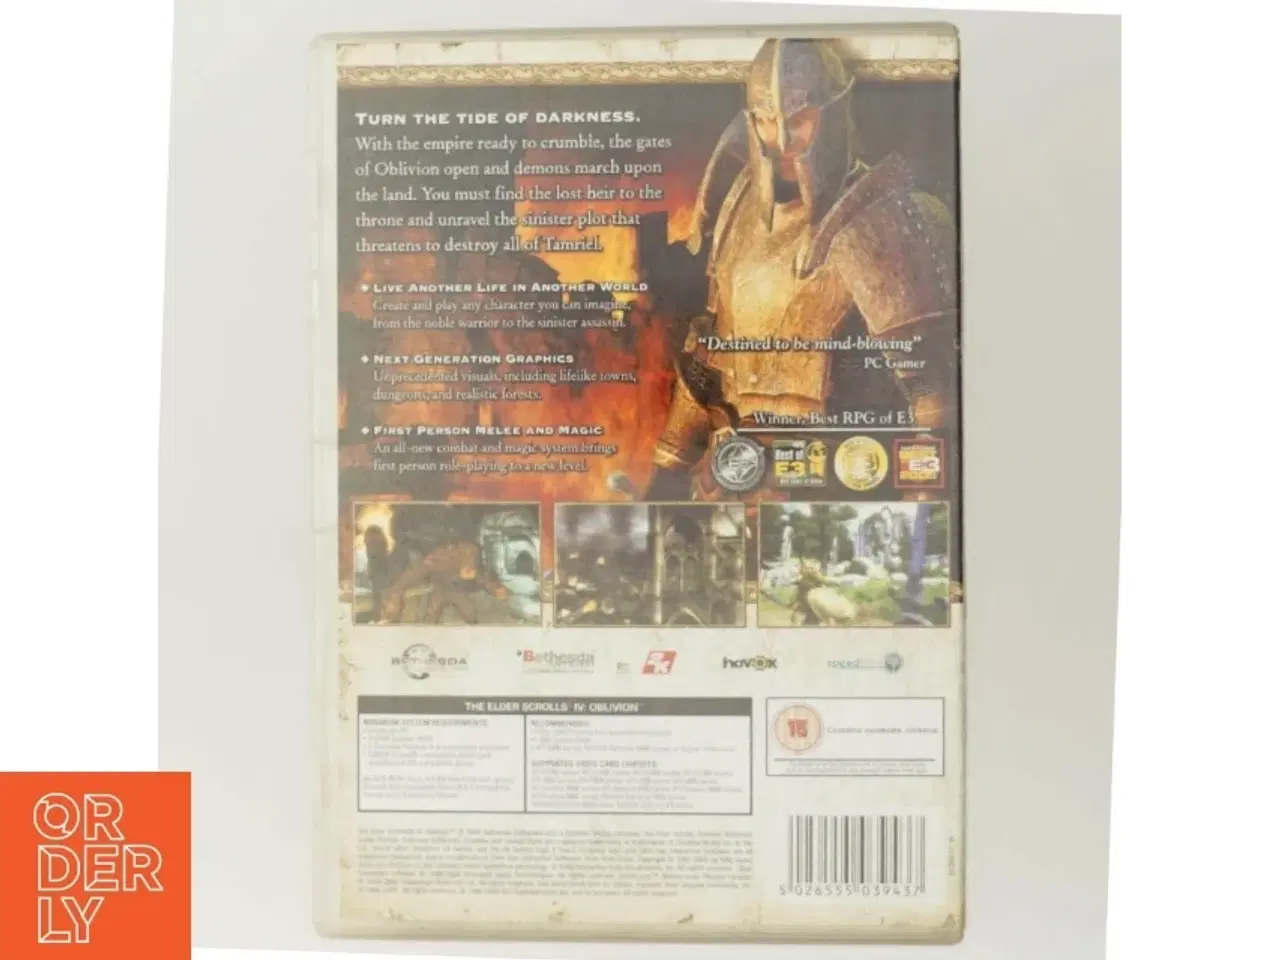 Billede 3 - The Elder Scrolls IV: Oblivion PC-spil fra Bethesda